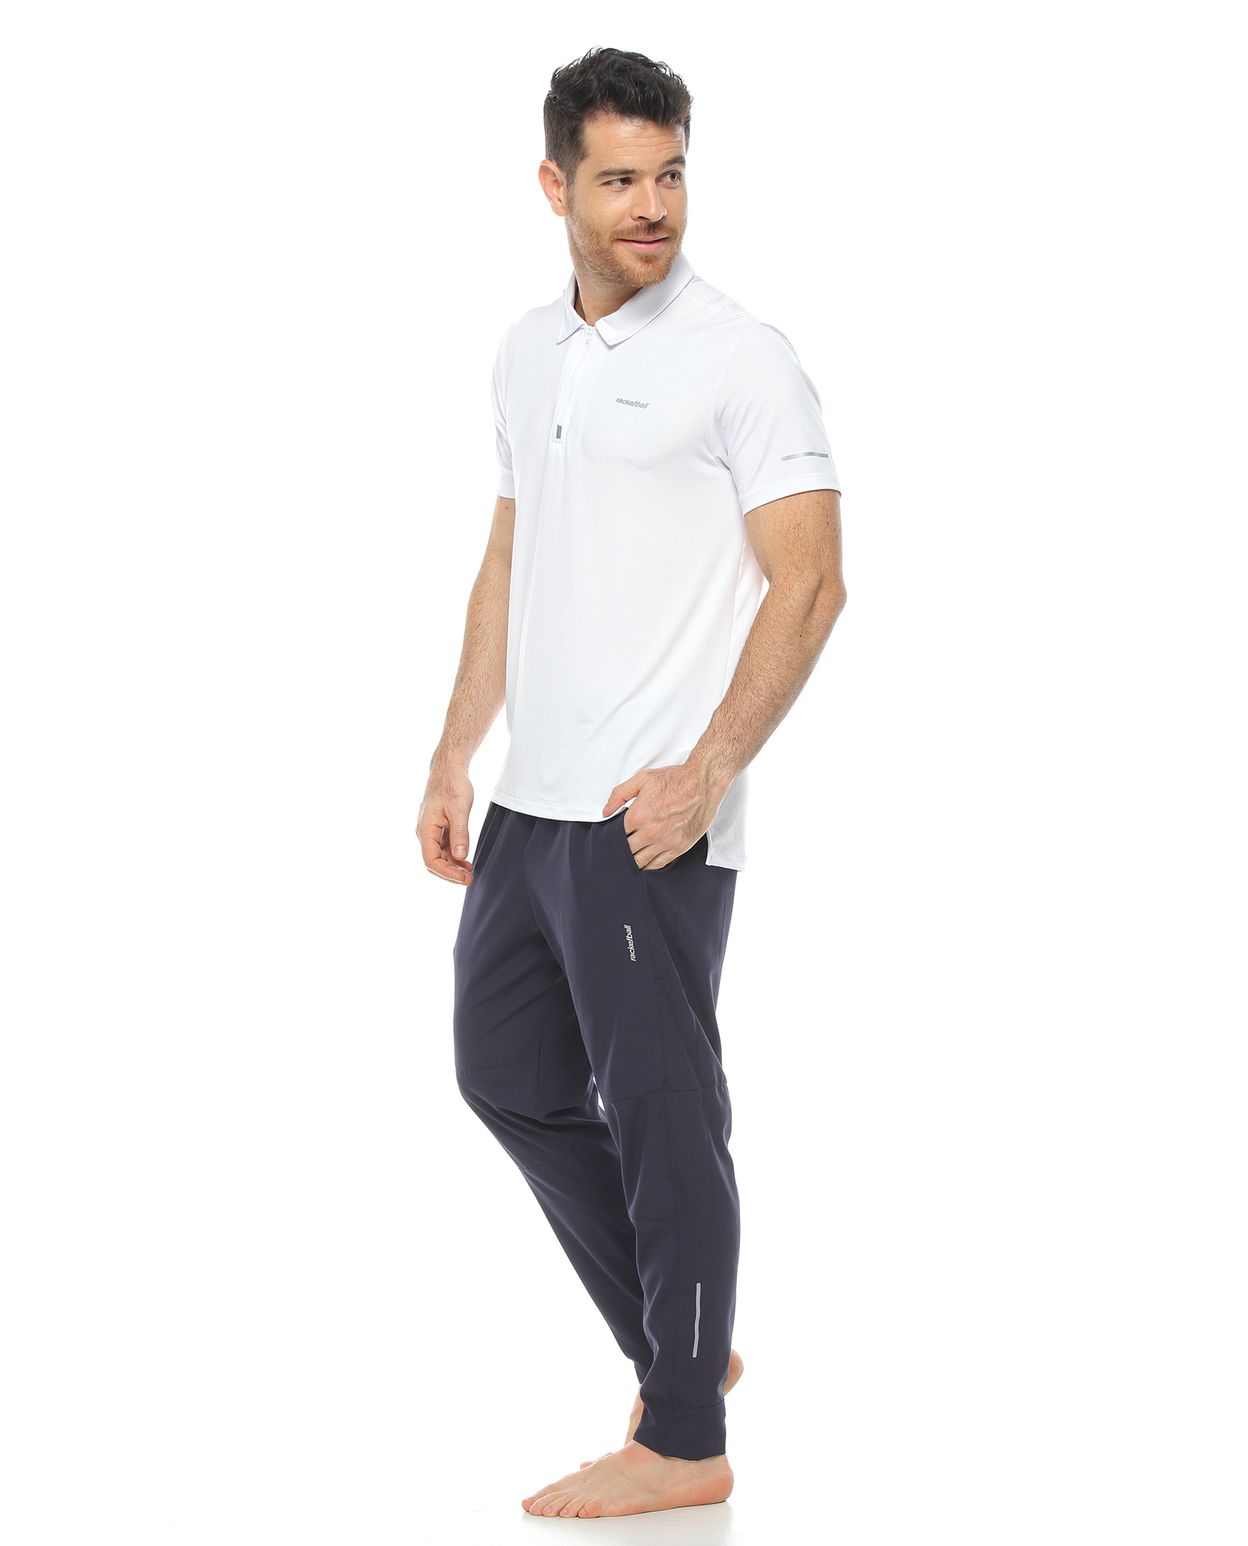 modelo con Pantalon Deportivo Azul Oscuro y camiseta tipo polo para Hombre parte lateral izquierda